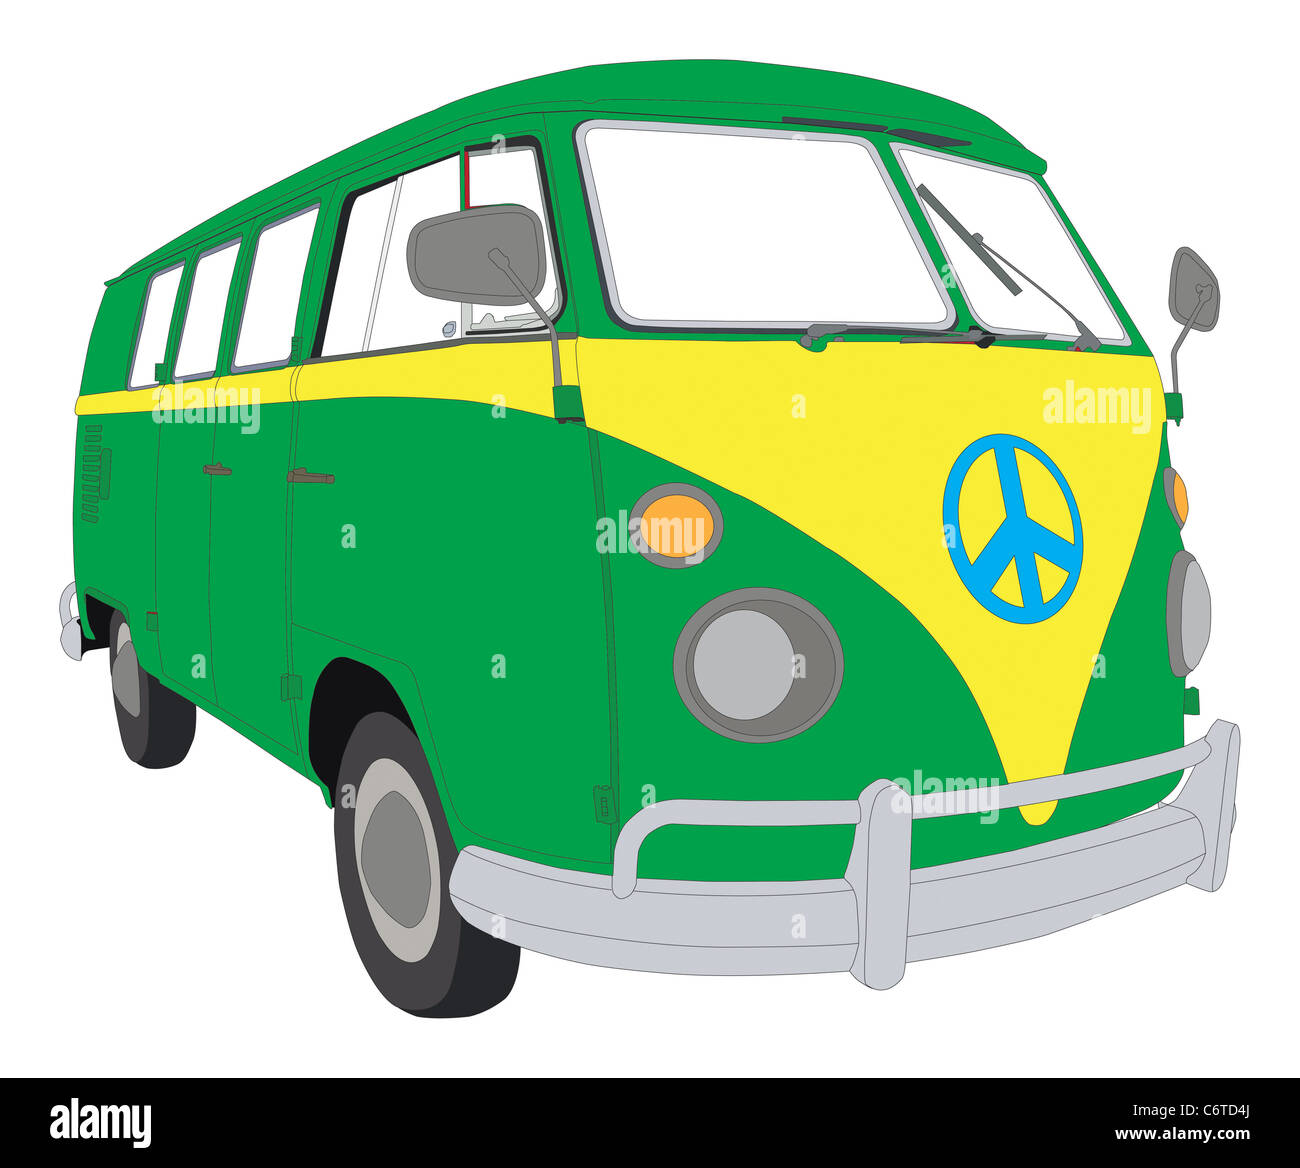 VW Beetle van camping-colorées Banque D'Images